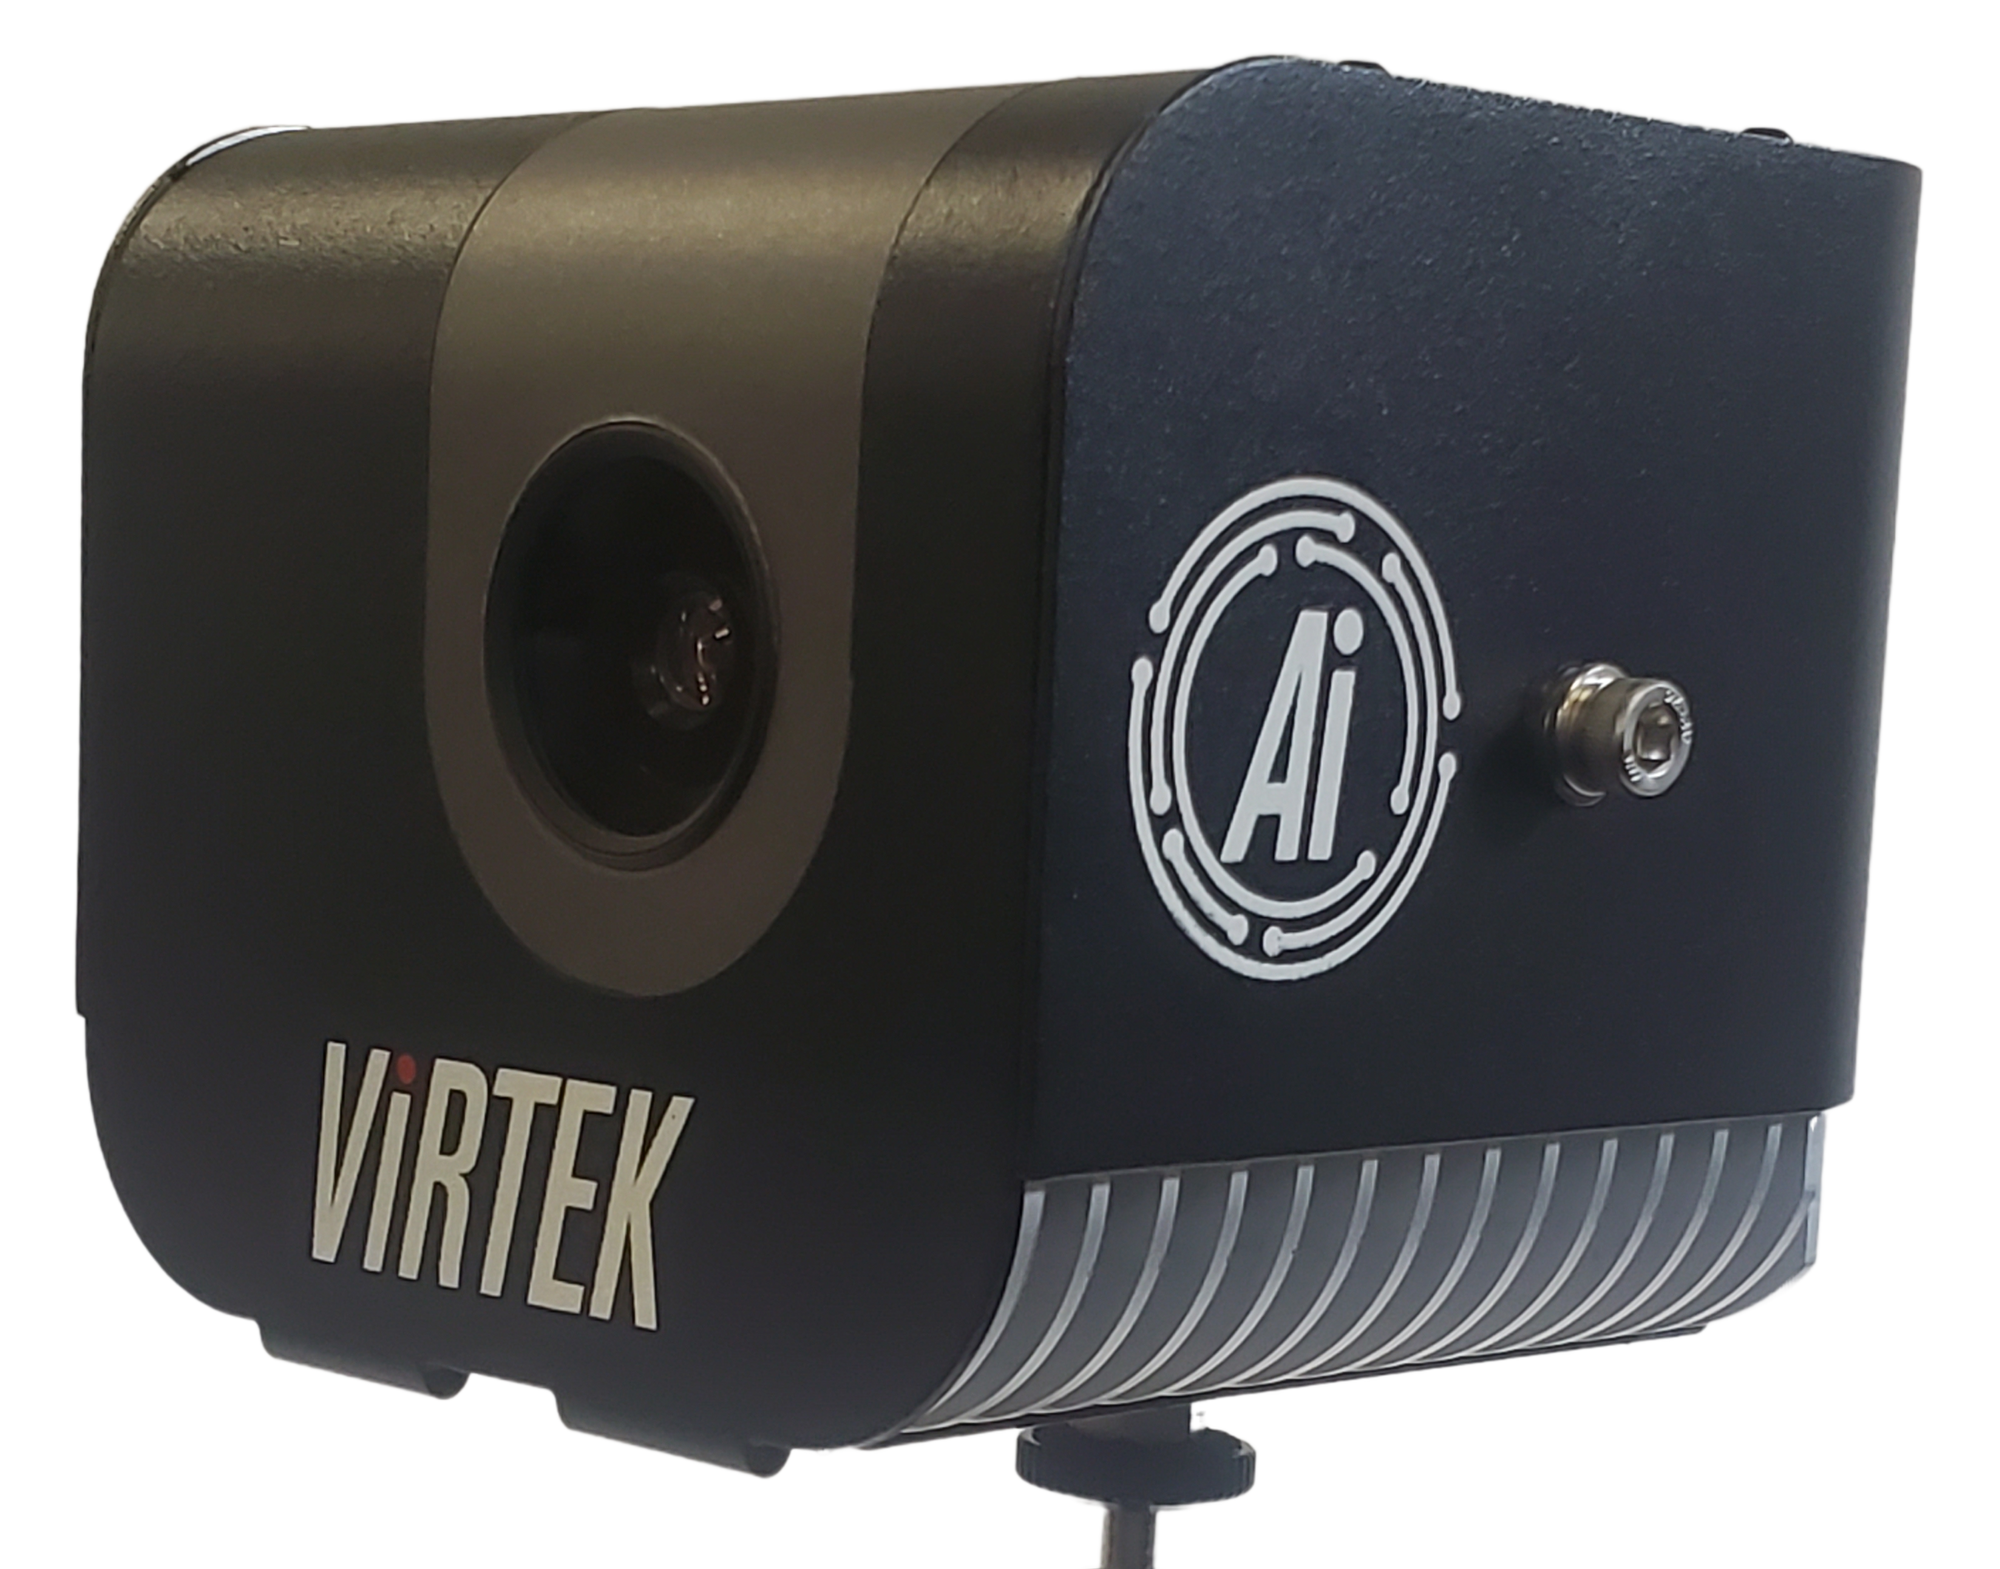 Virtek zeigt IRIS™ 3D mit Ai-fähigem Kamerasystem, das beispiellose Sichtbarkeit in den Fertigungsablauf bringt